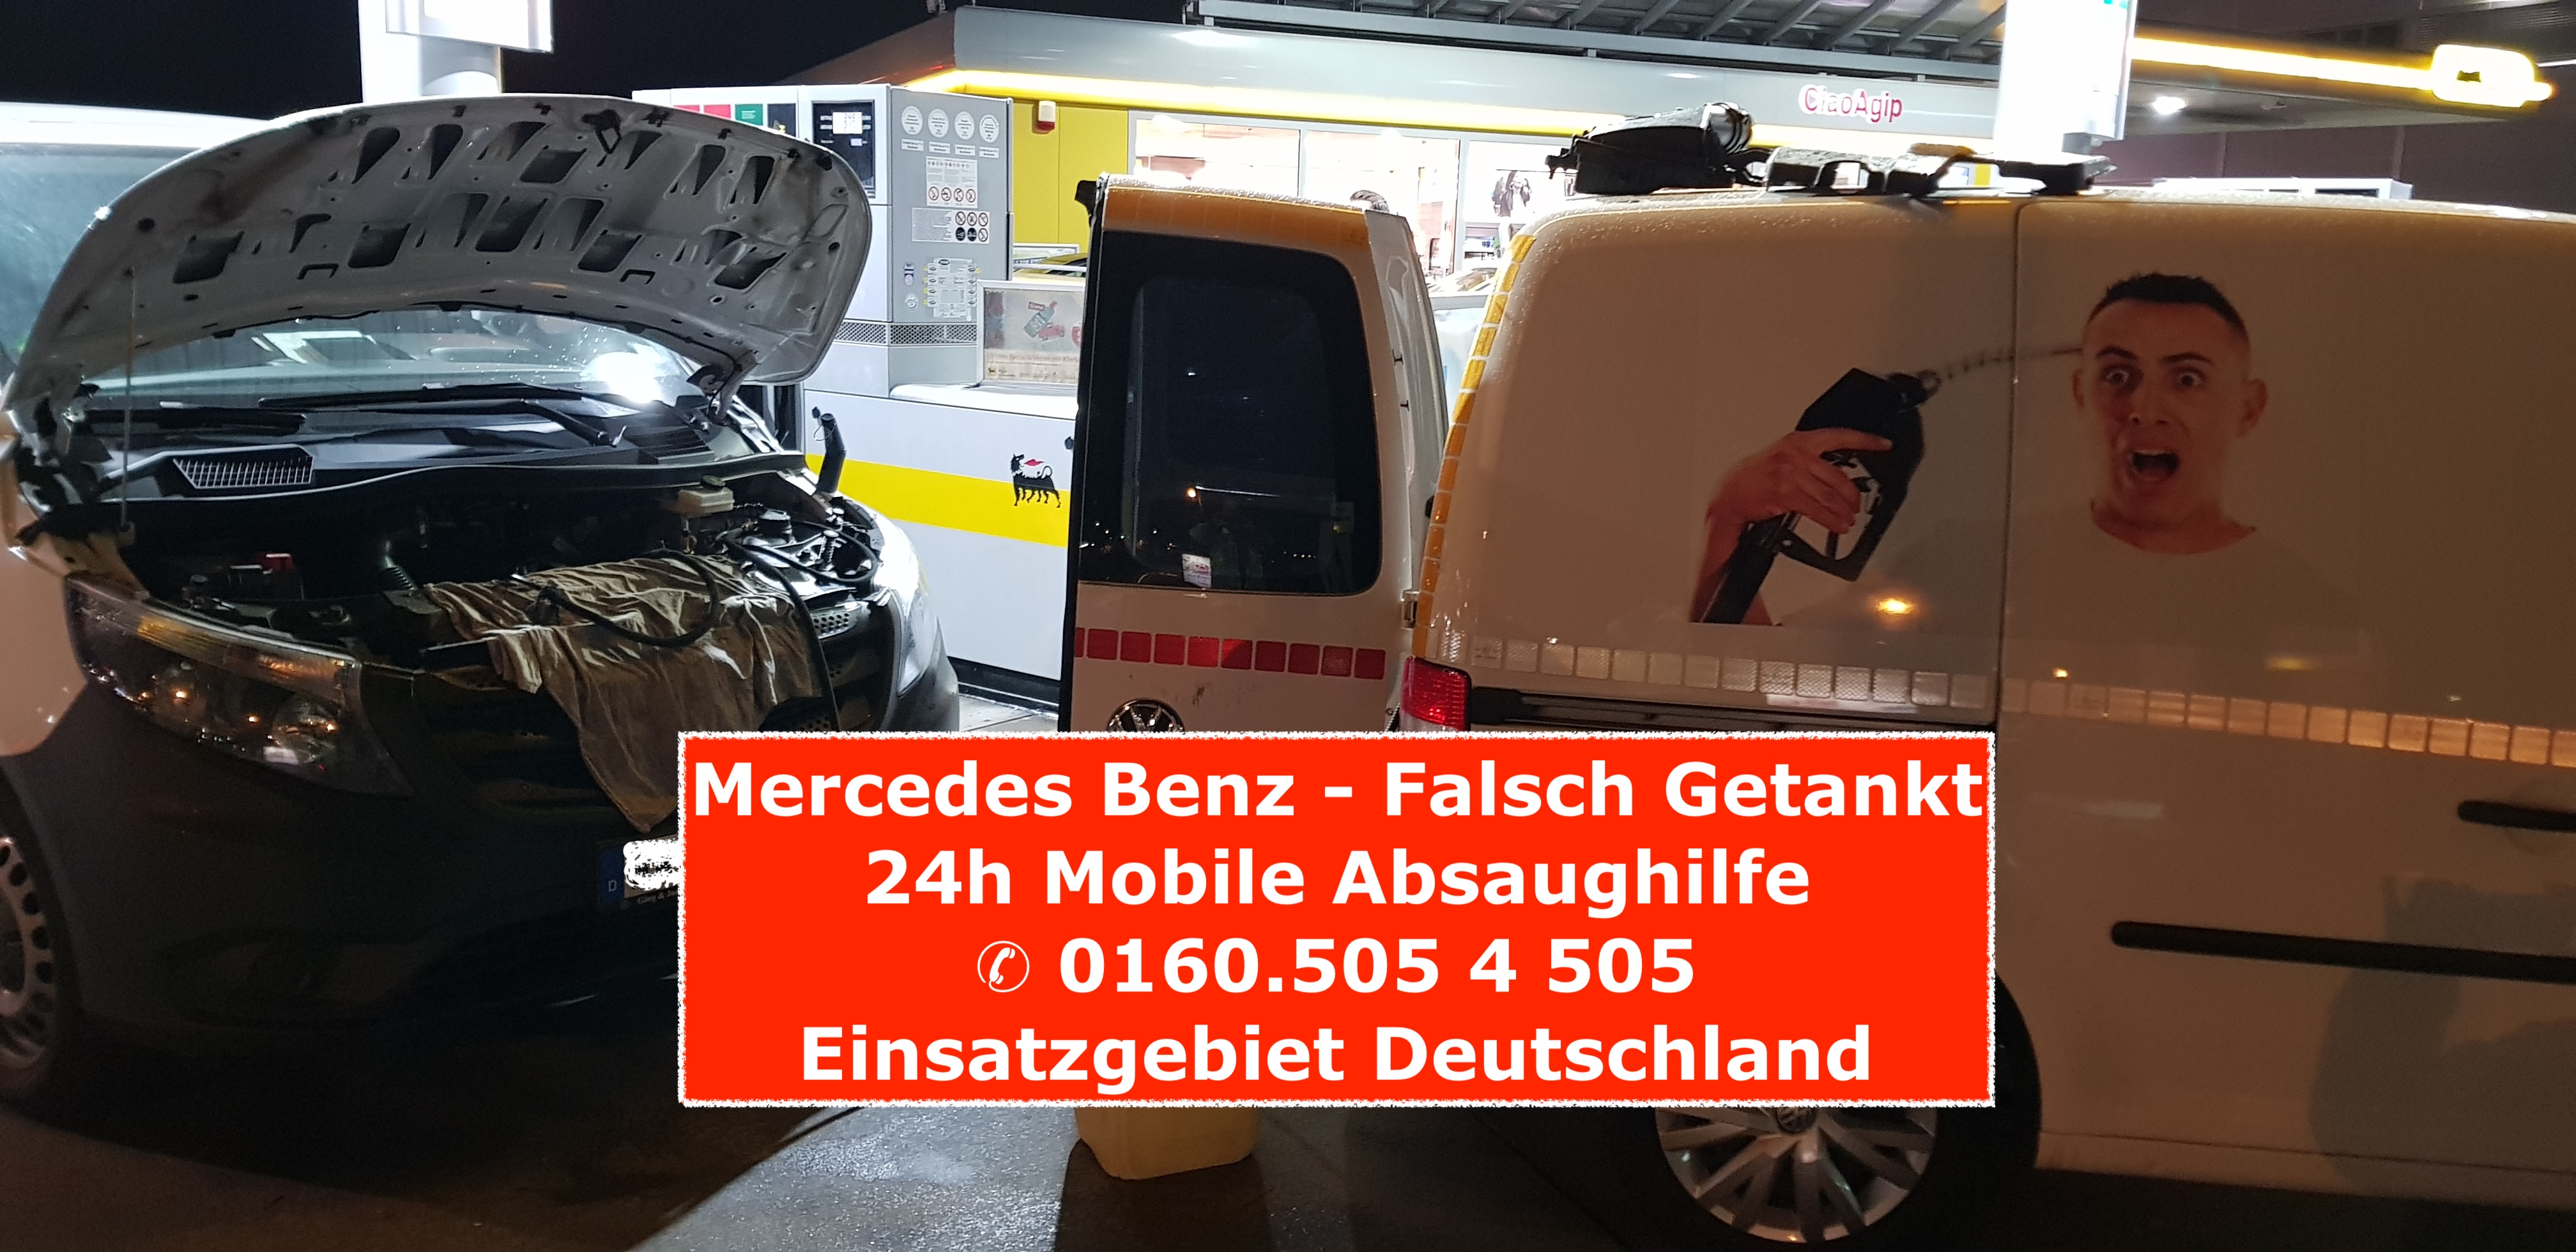 Falsch Getankt Falsch Tanken24
Der Mobile absauge Notdienst in Deutschland
0160 5054505